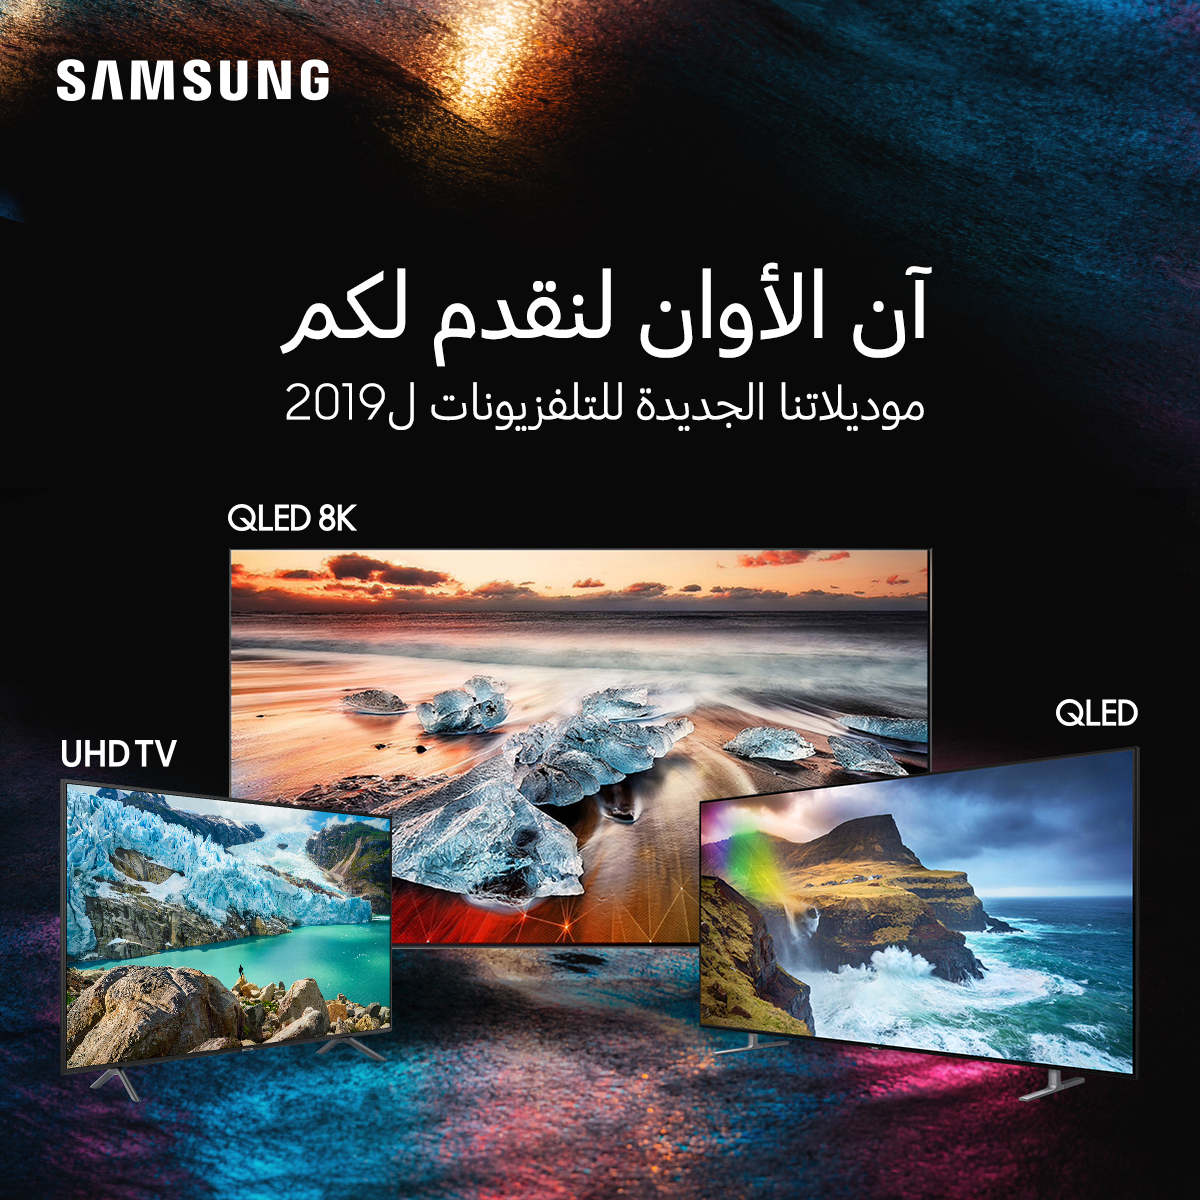 سامسونج إلكترونيكس المشرق العربي تطلق تشكيلة 2019 من أجهزة التلفاز ضمن سلسلة R في أسواق المملكة